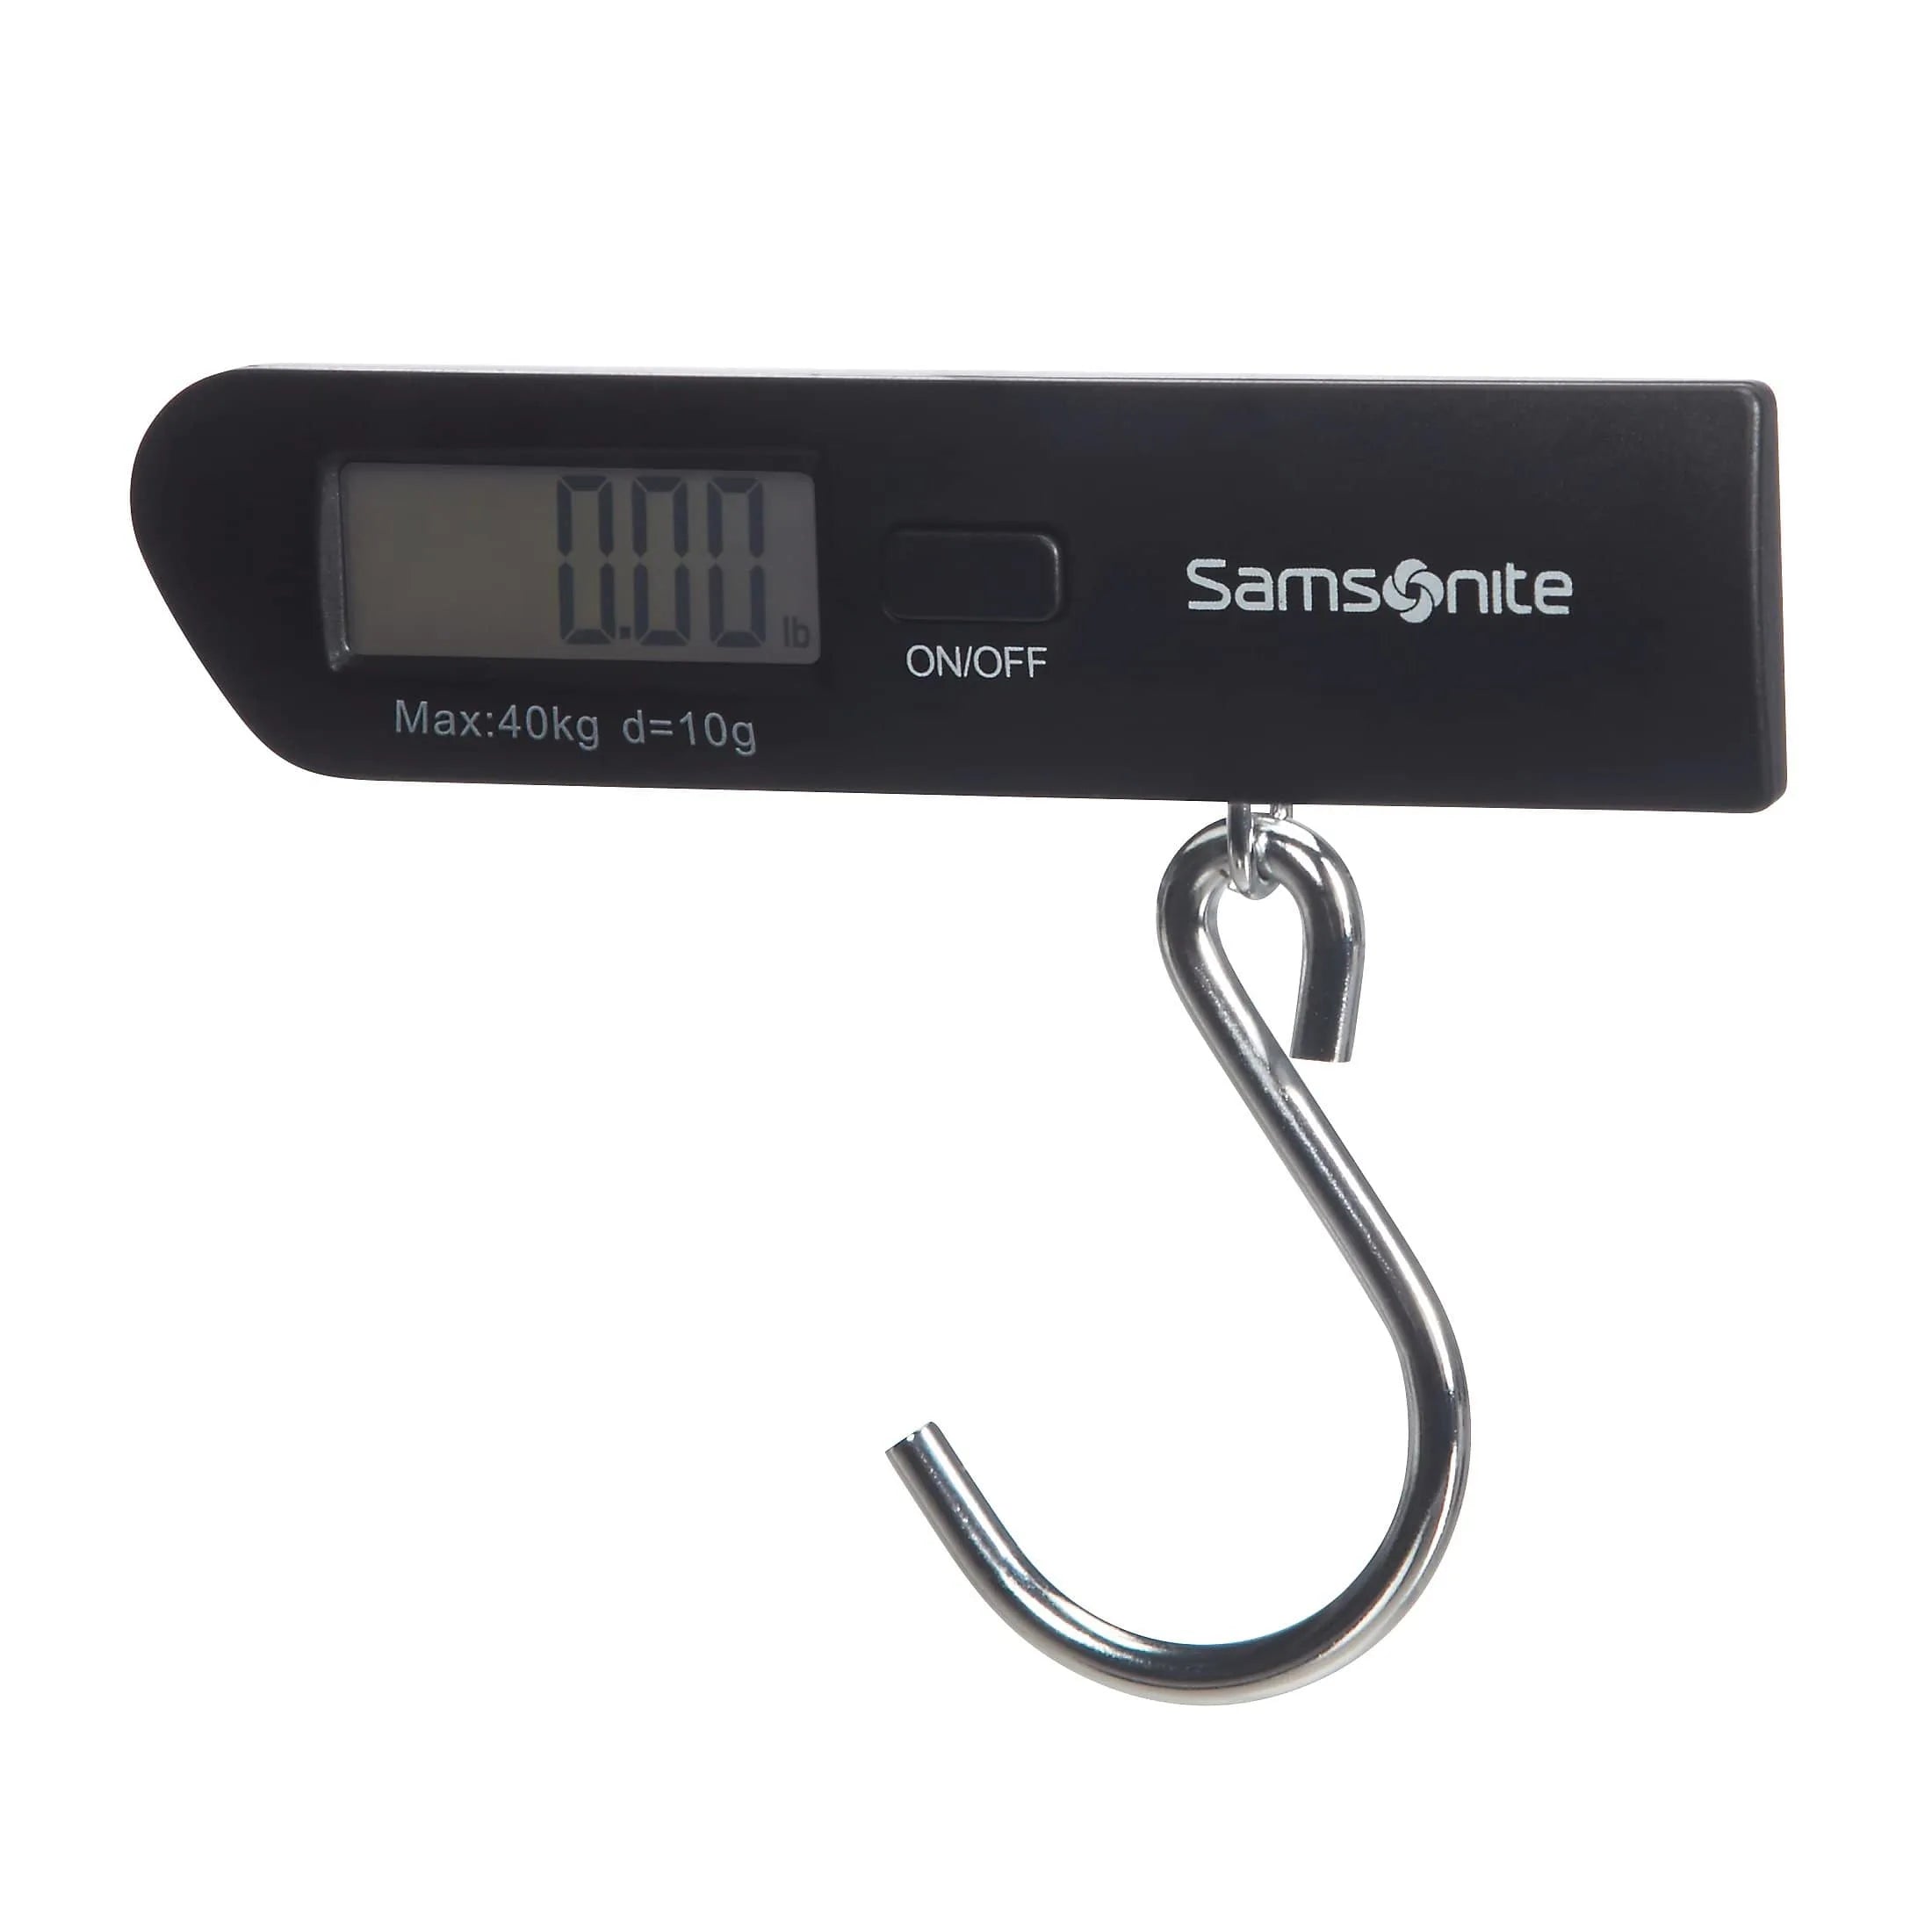 Samsonite Travel Accessories Digitale Kofferwaage bis 40 Kg - black